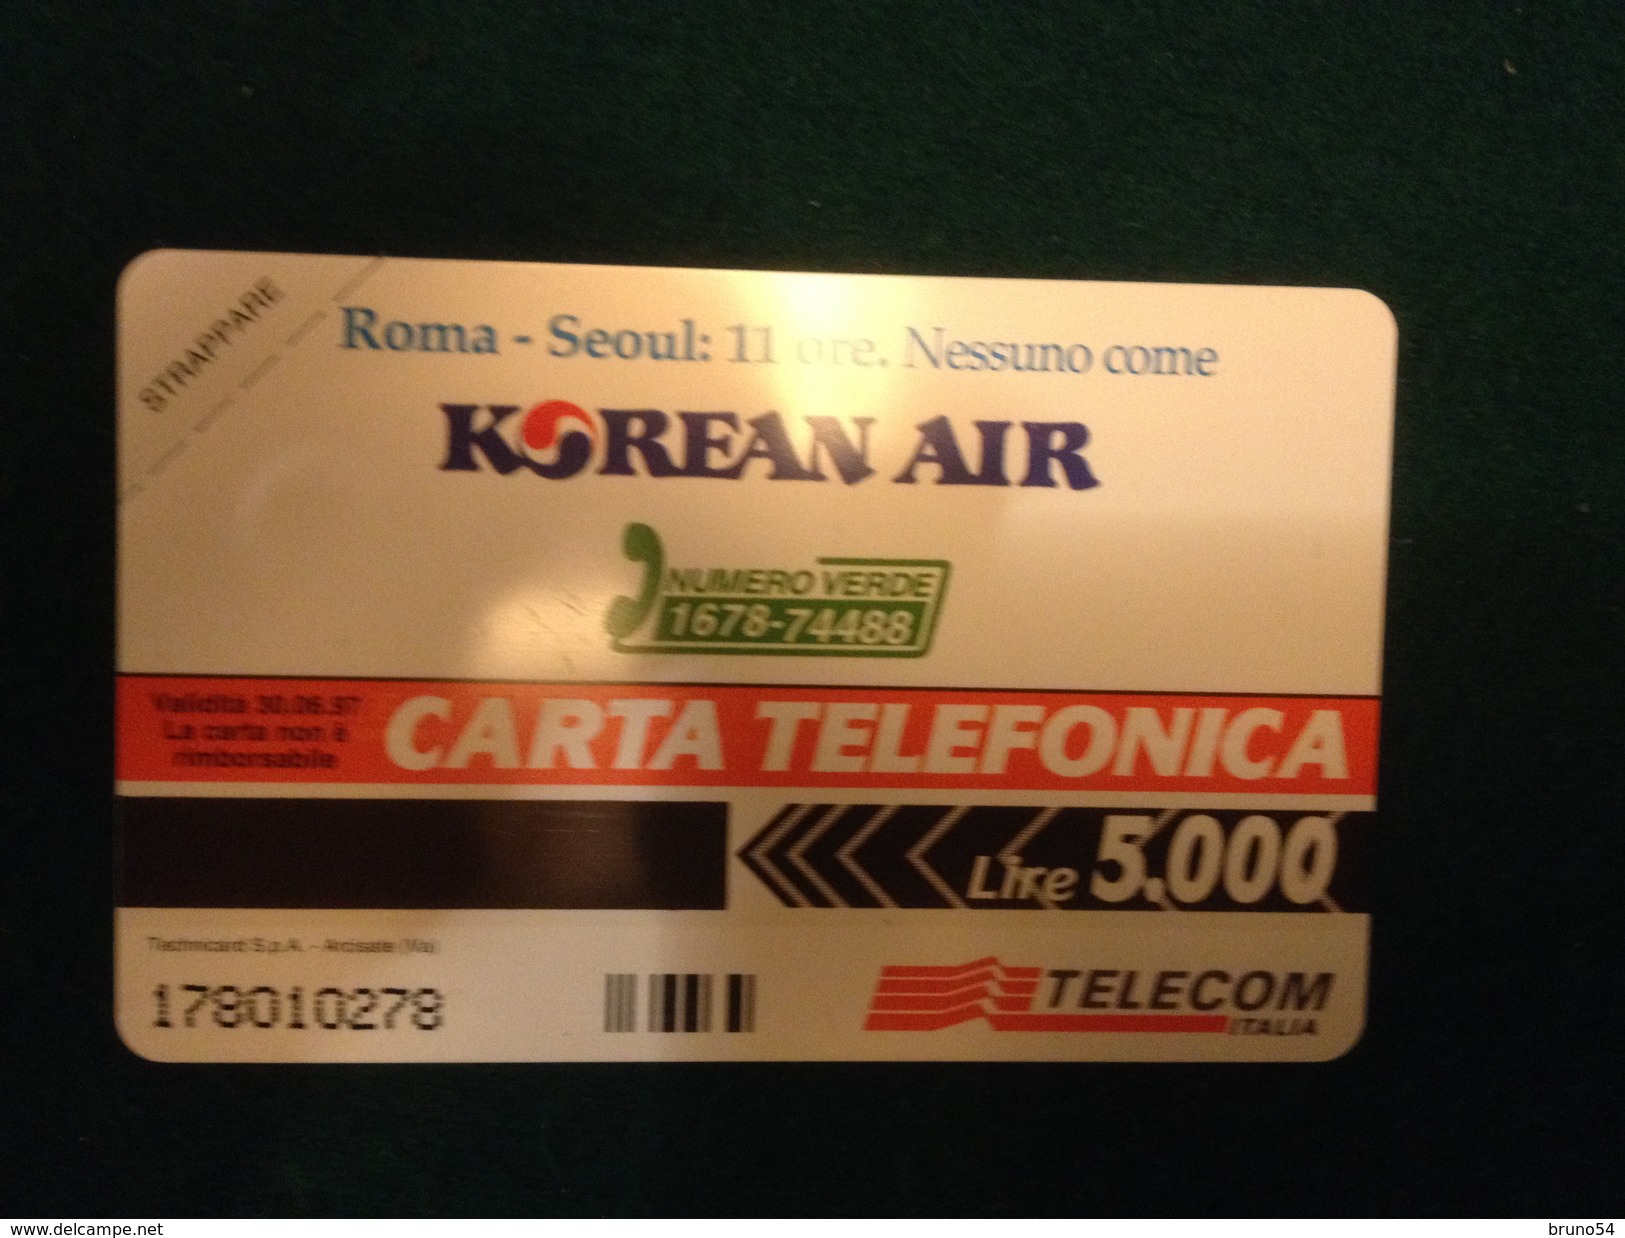 Scheda Telefonica Golden 281 Nuova Da Lire 5000 Korean Air  Roma Seoul  11 Ore Airplane Jumbo 747 Tiratura 14.000 - Private Riedizioni